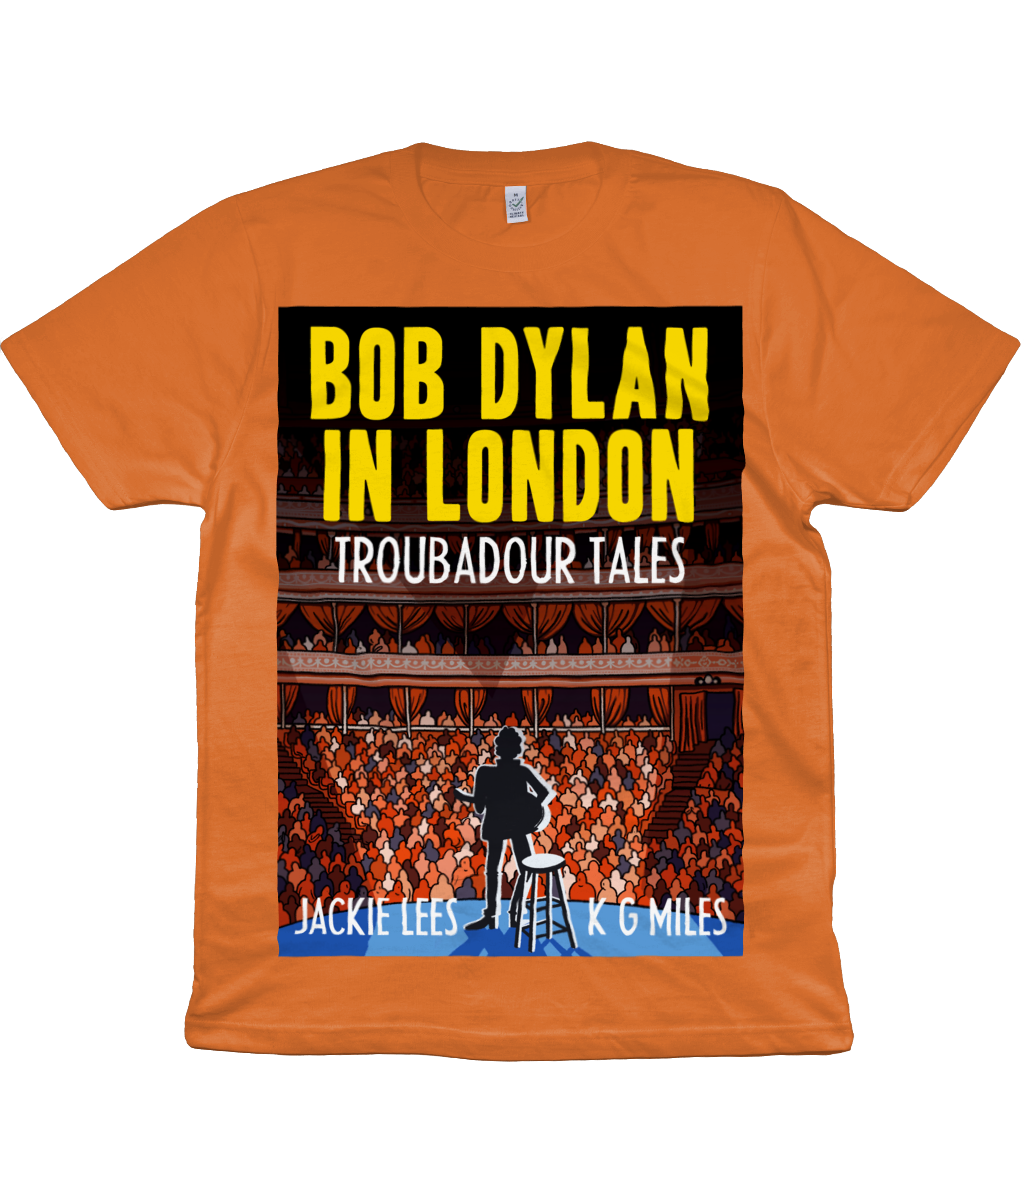 BOB DYLAN IN LONDON - TROUBADOUR TALES